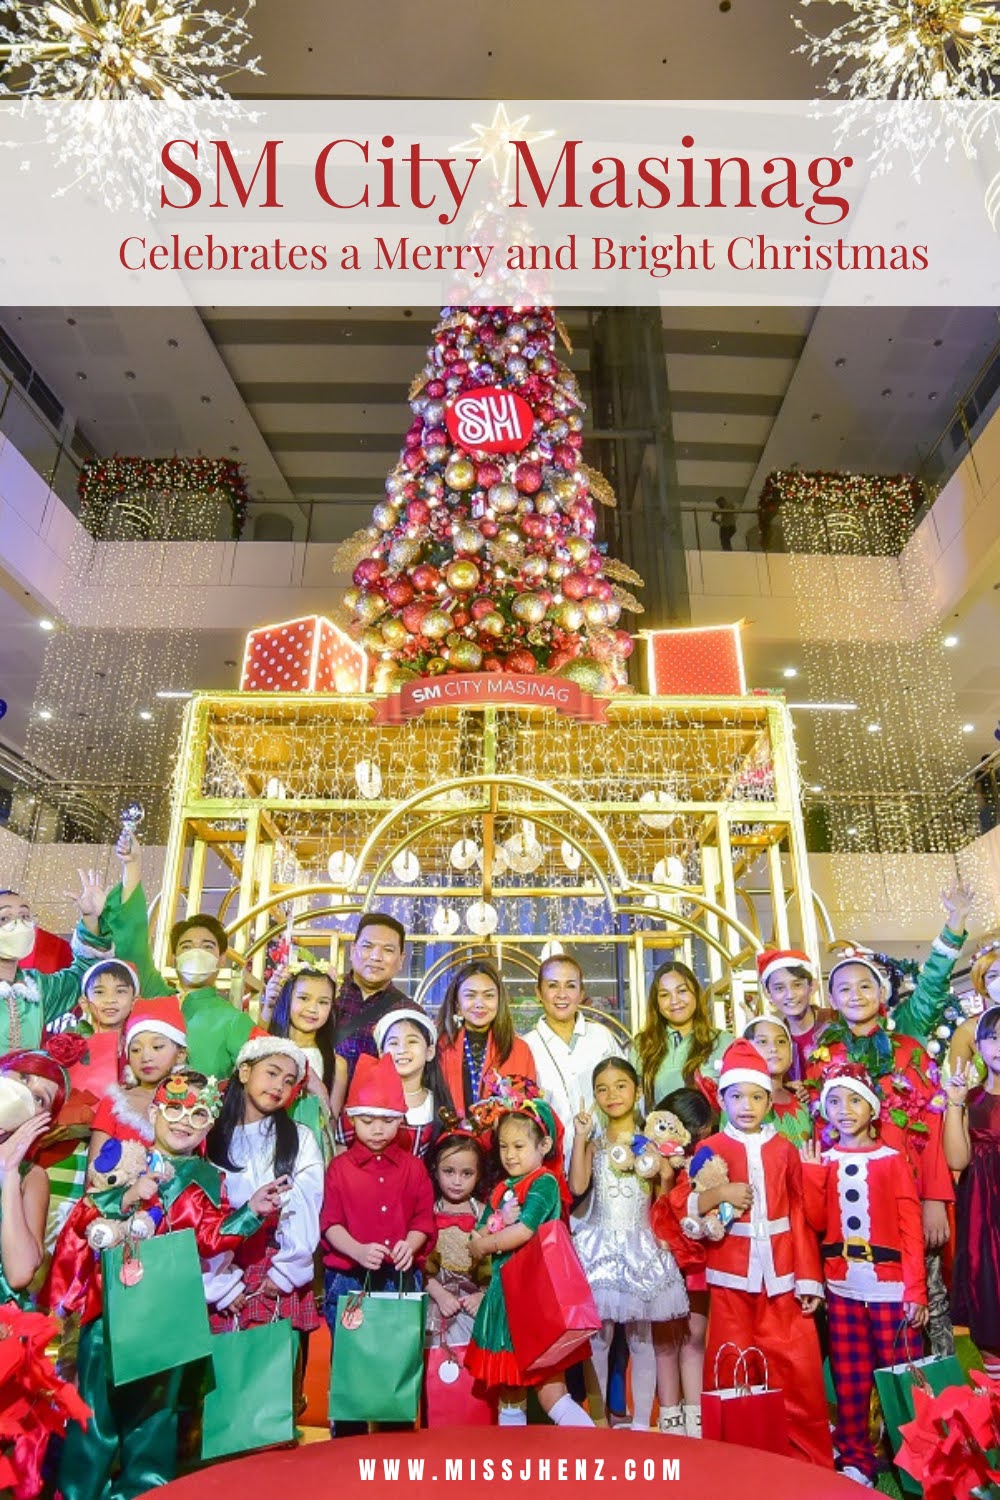 SM City Masinag celebrates a Merry and Bright Christmas